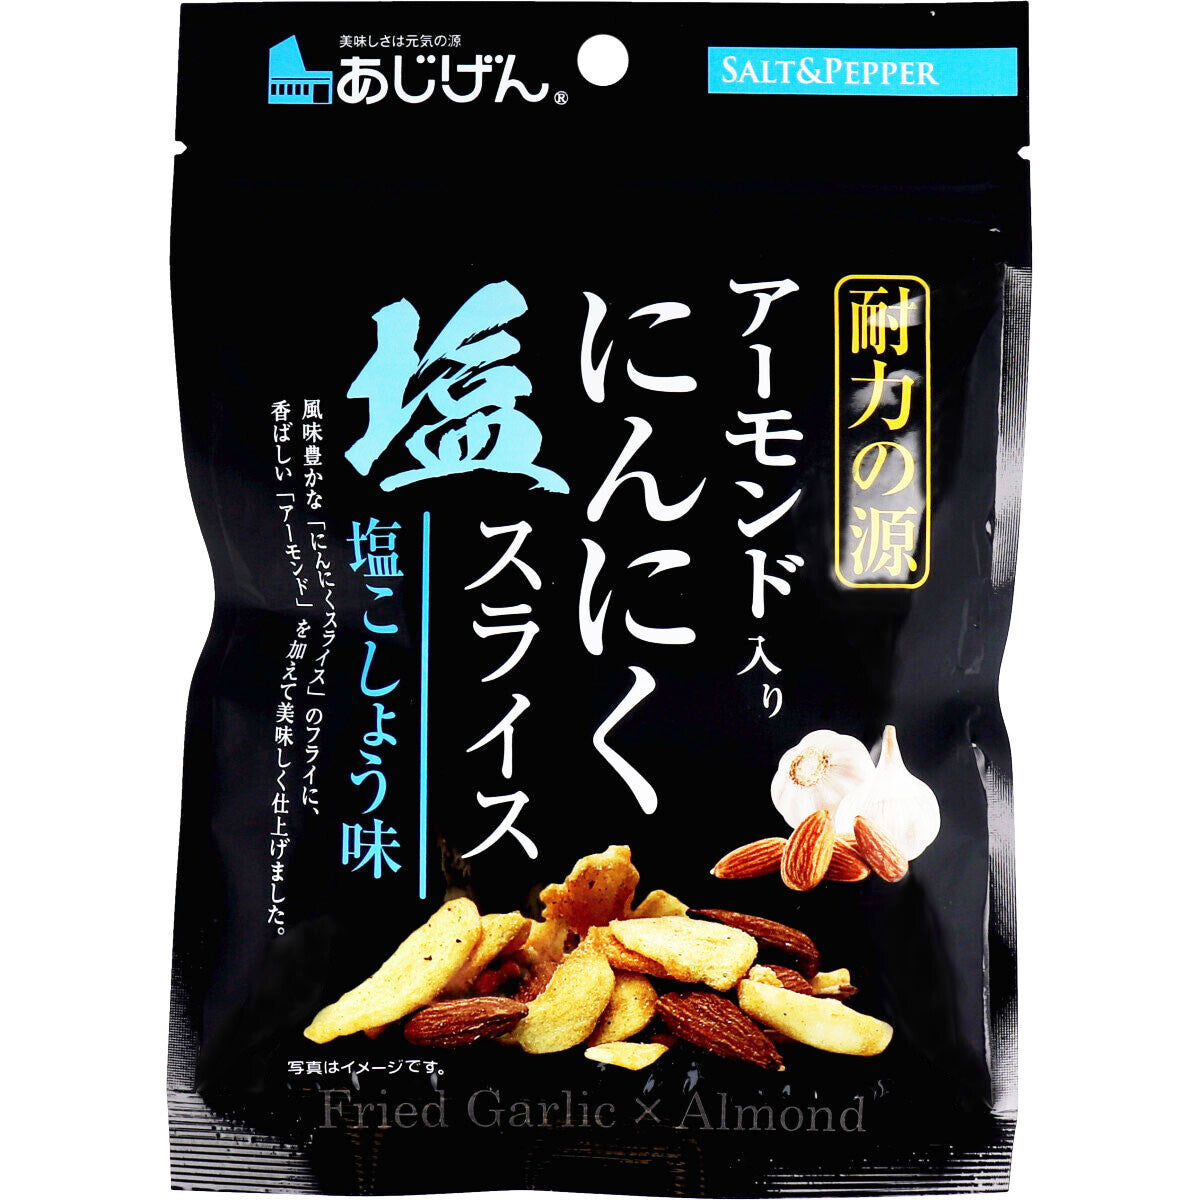 Ajigen - Almond Sliced Garlic Salt and Pepper Snack